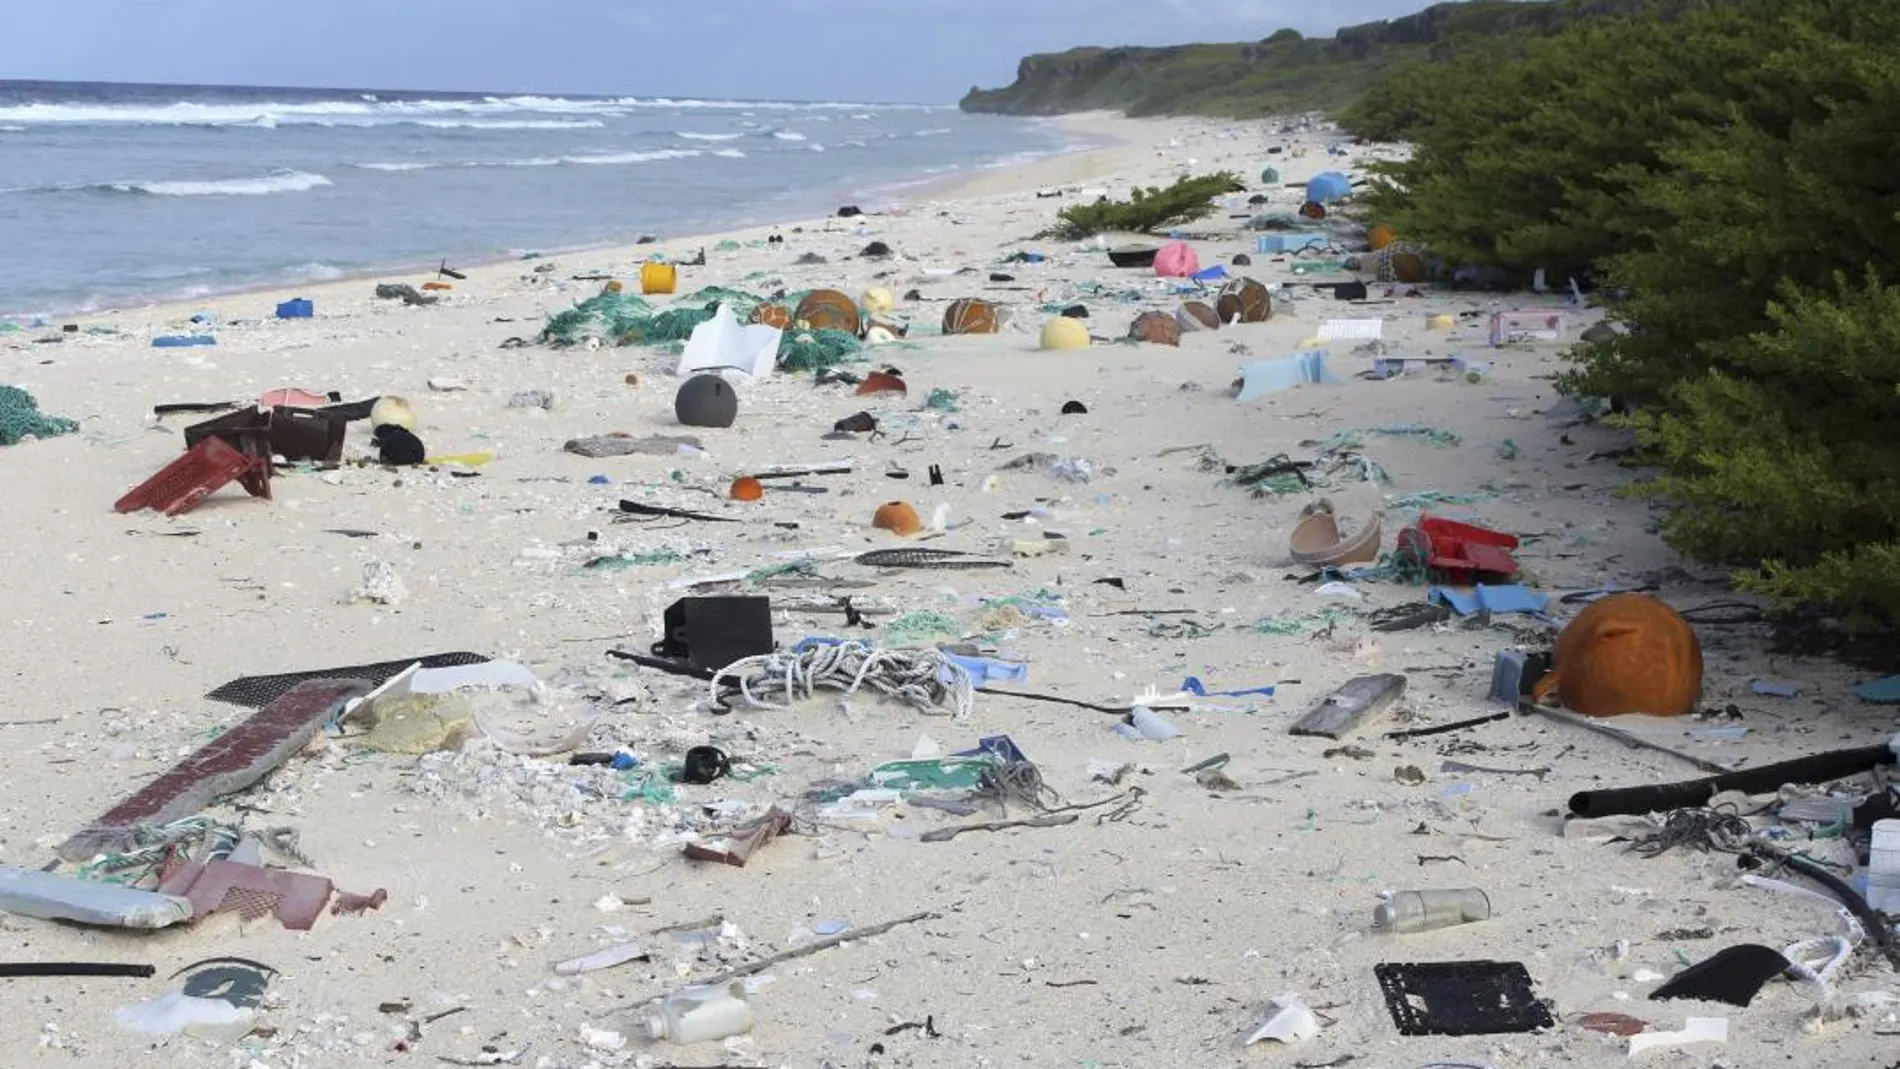 El proyecto "Mares circulares" limpia las playas de residuos que posteriormente son caracterizados y reintegrados en distintos procesos